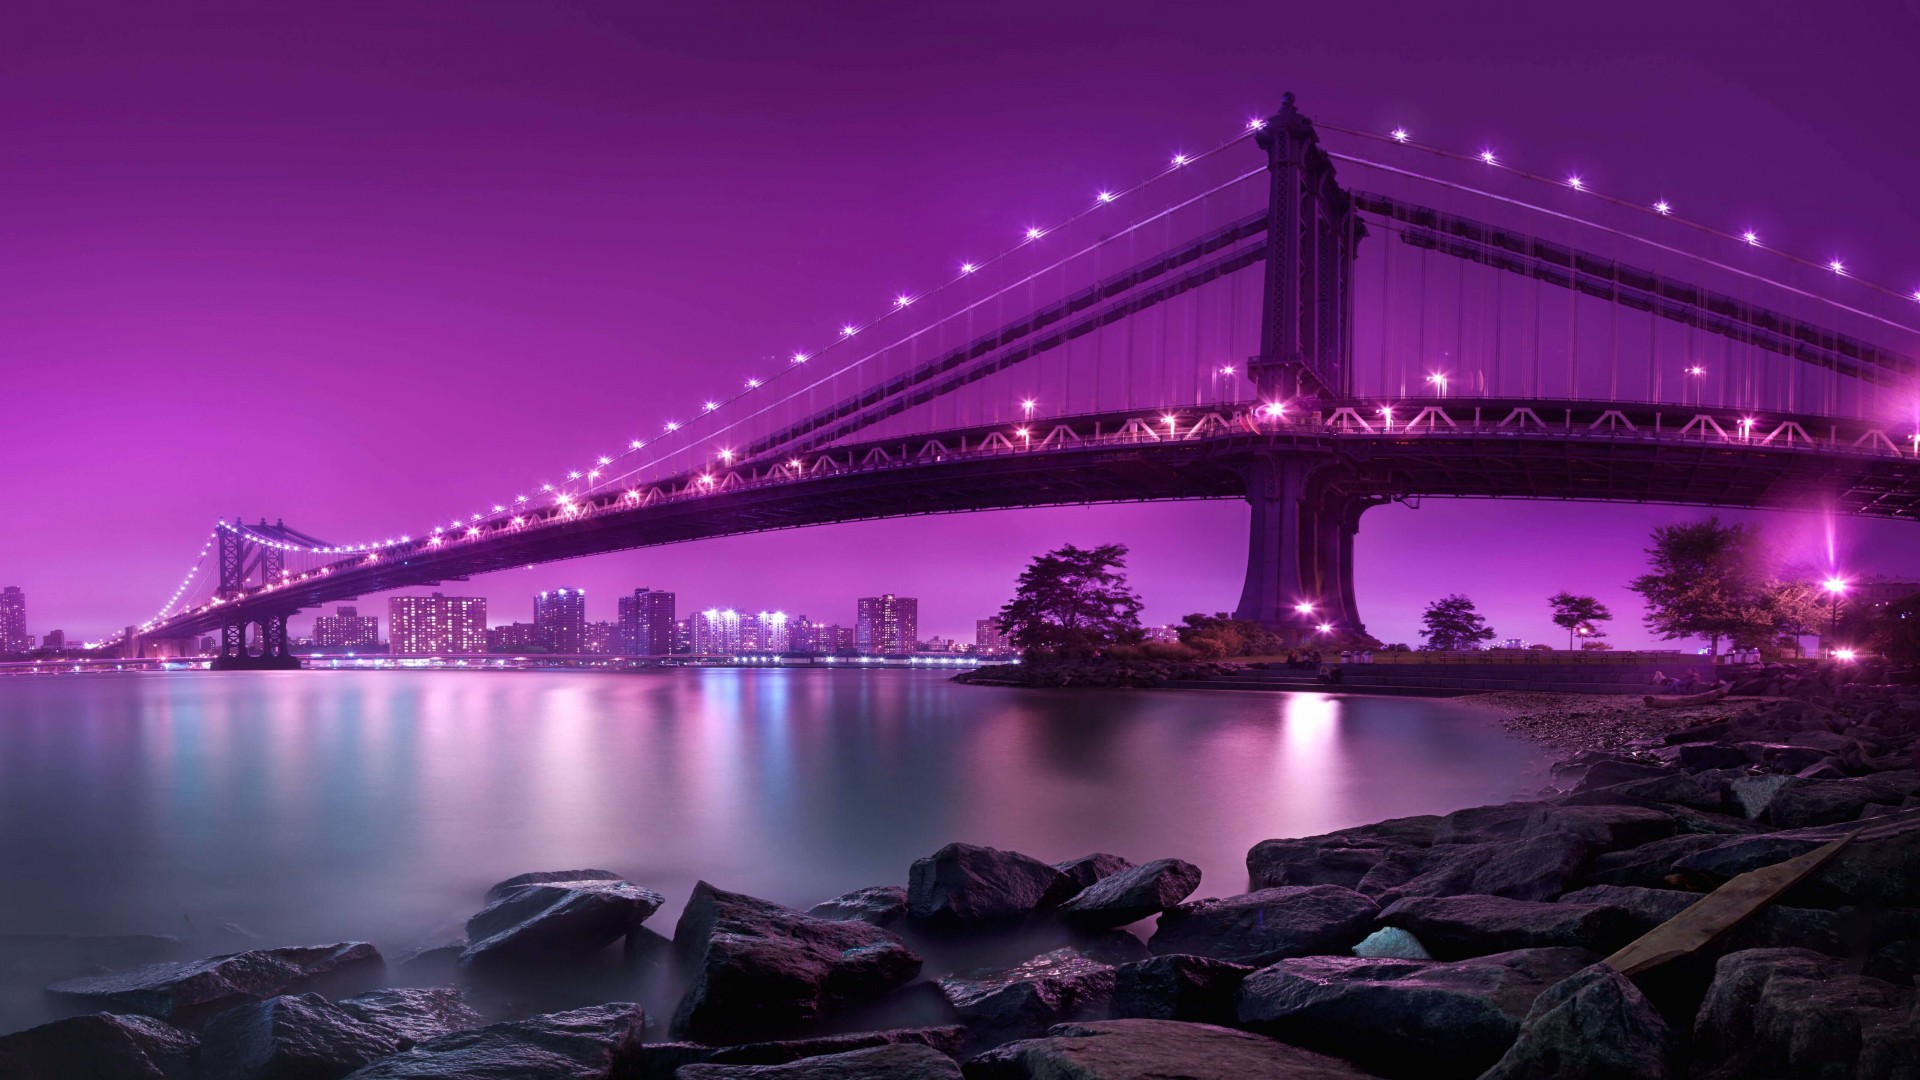 Brooklyn Bridge by night Wallpaper for Desktop 1920x1080